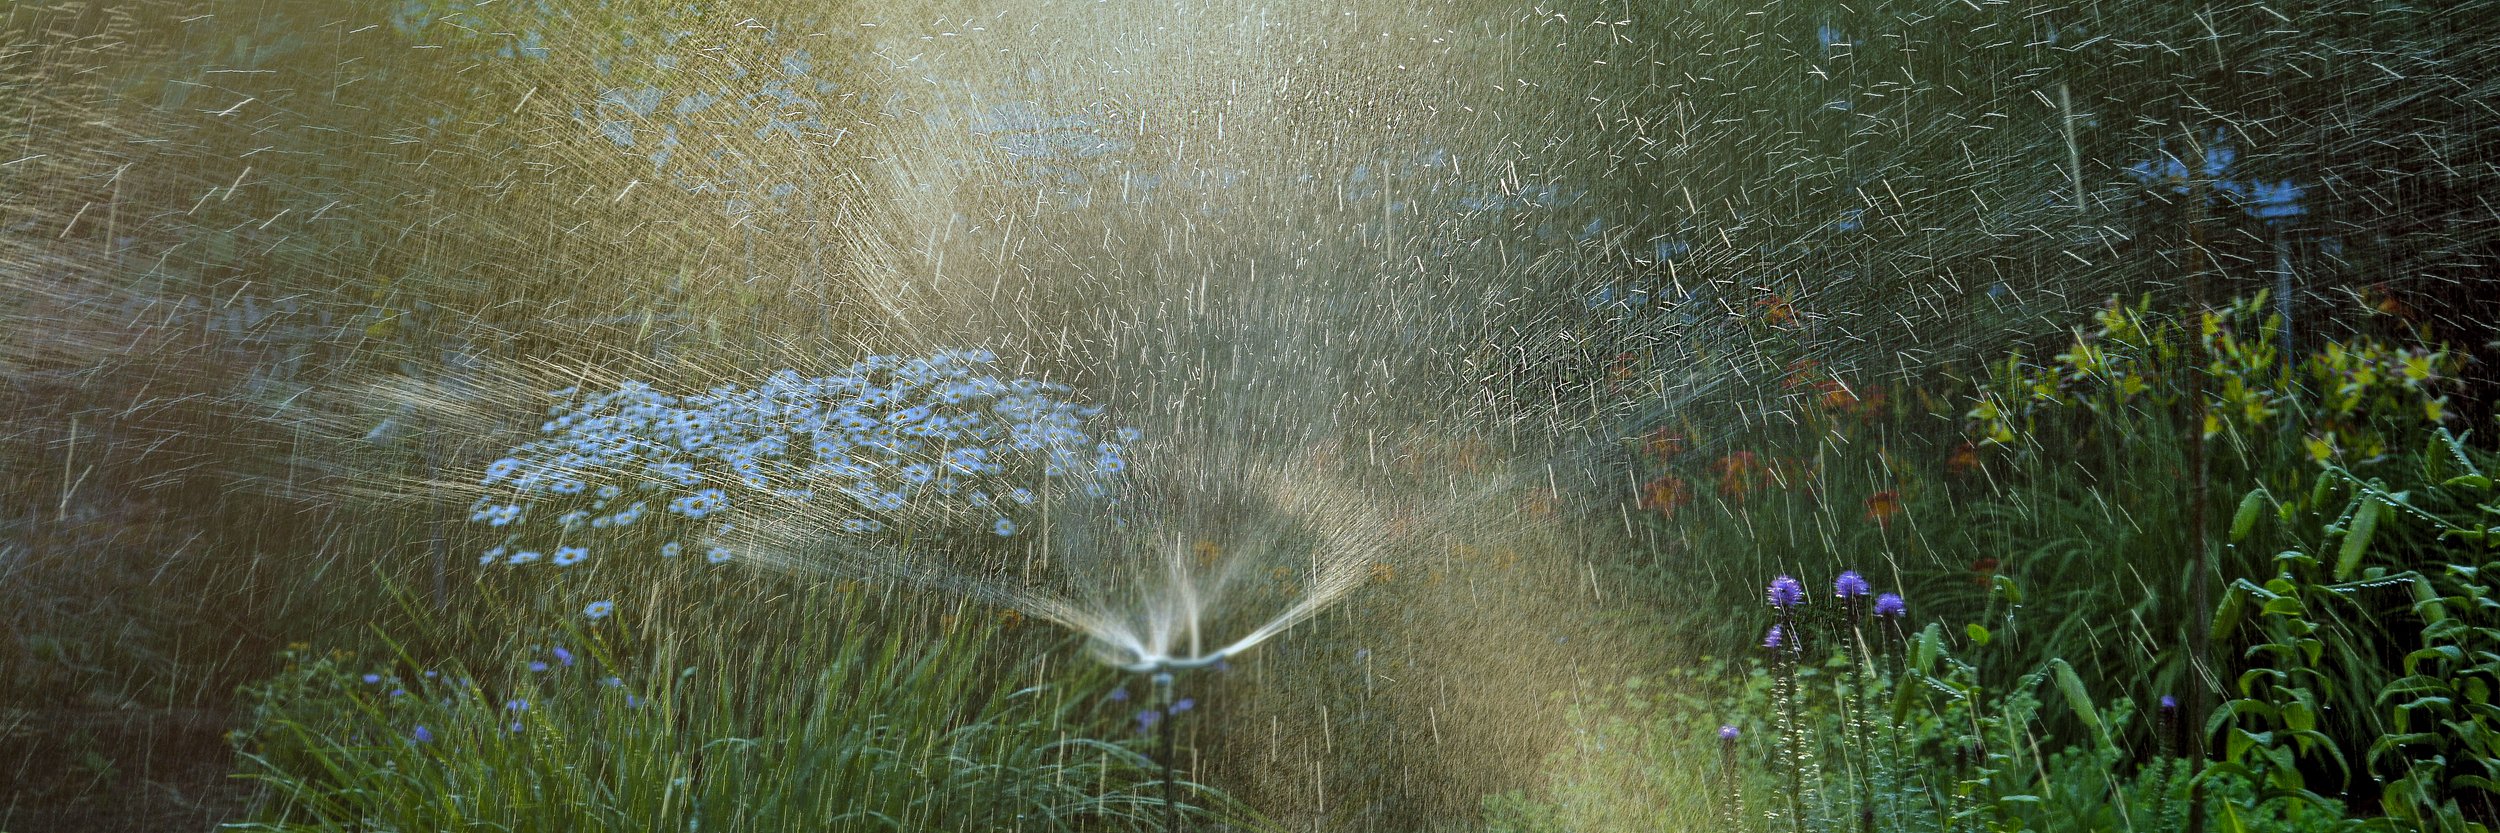  Sprinkler  © Lisa Stewart 2020 